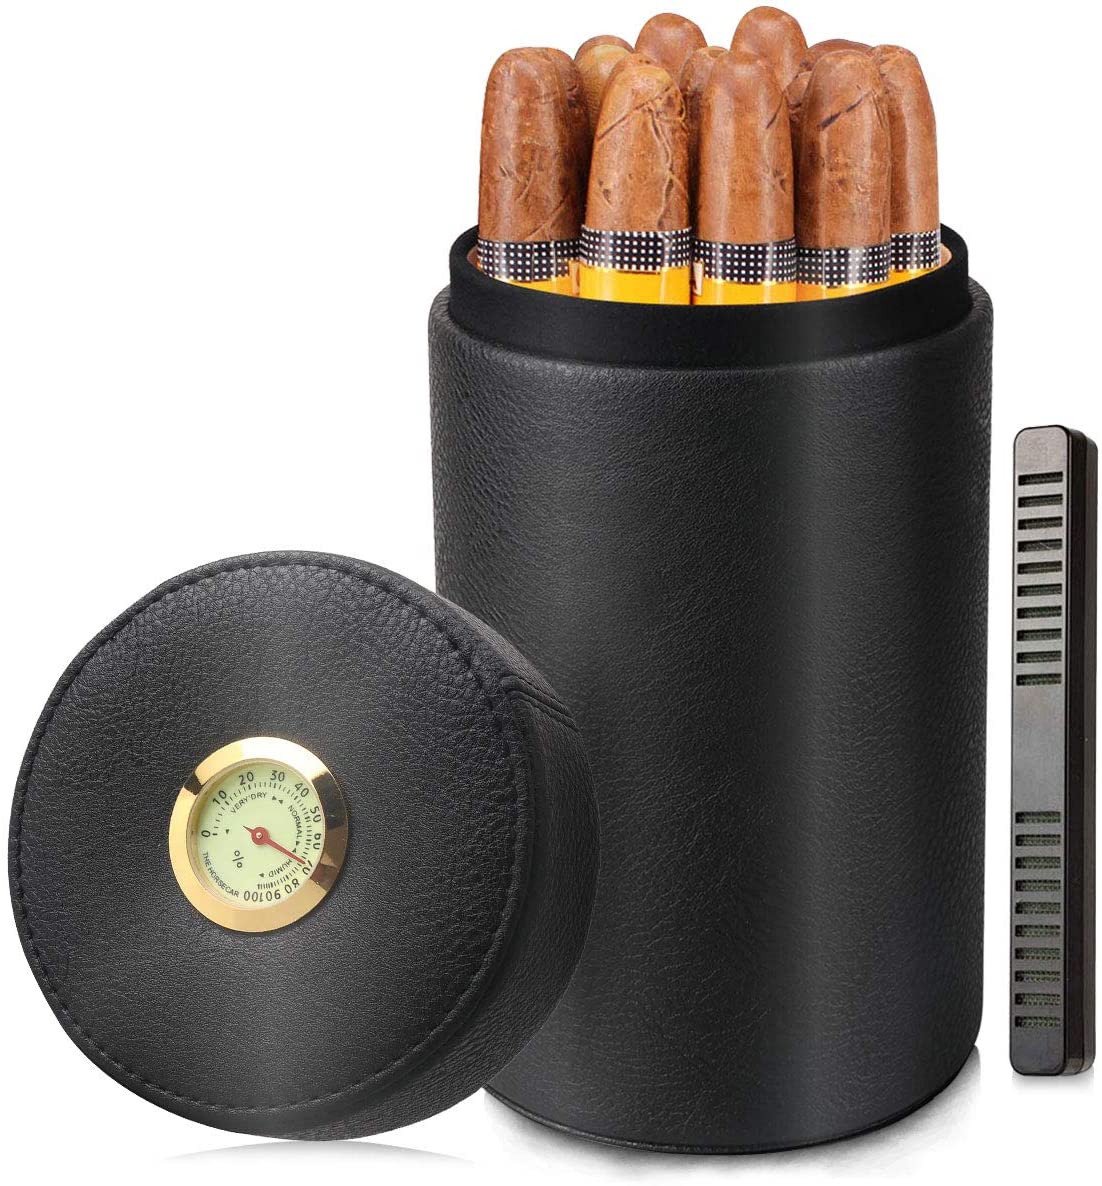  Cigar Sets for Gift